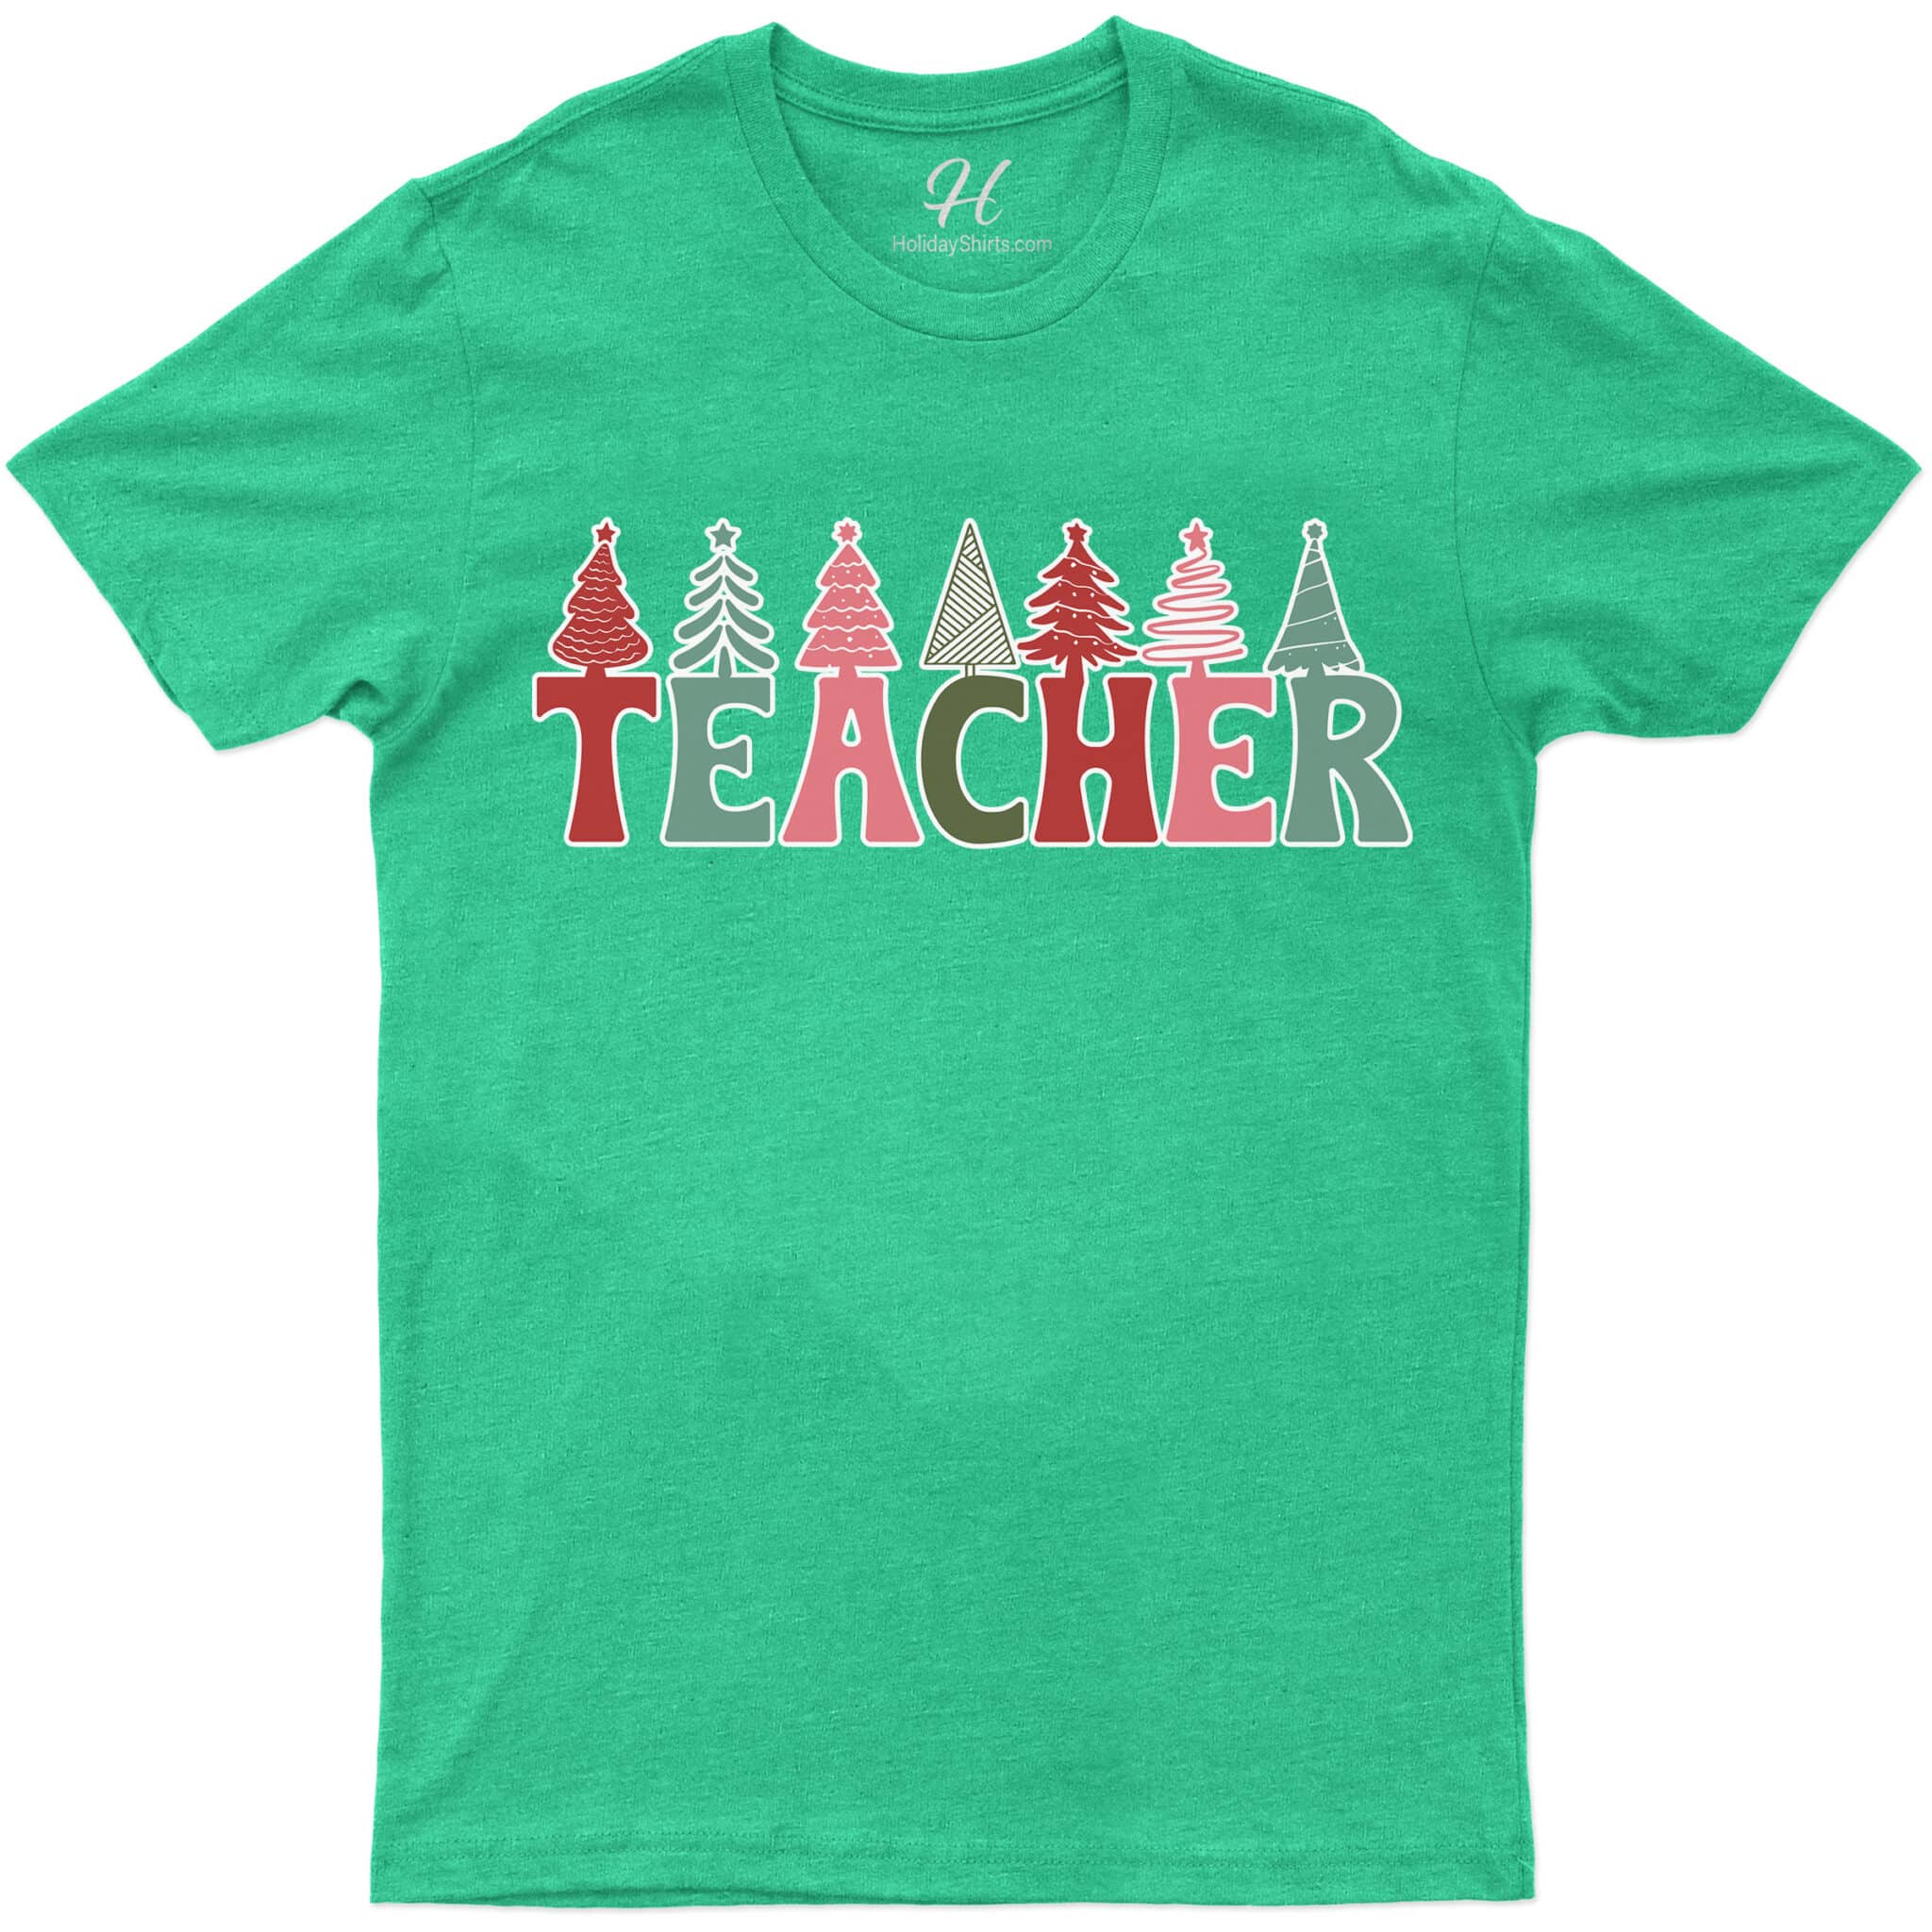 Teacher's Festive Christmas Tee By Holidayshirts